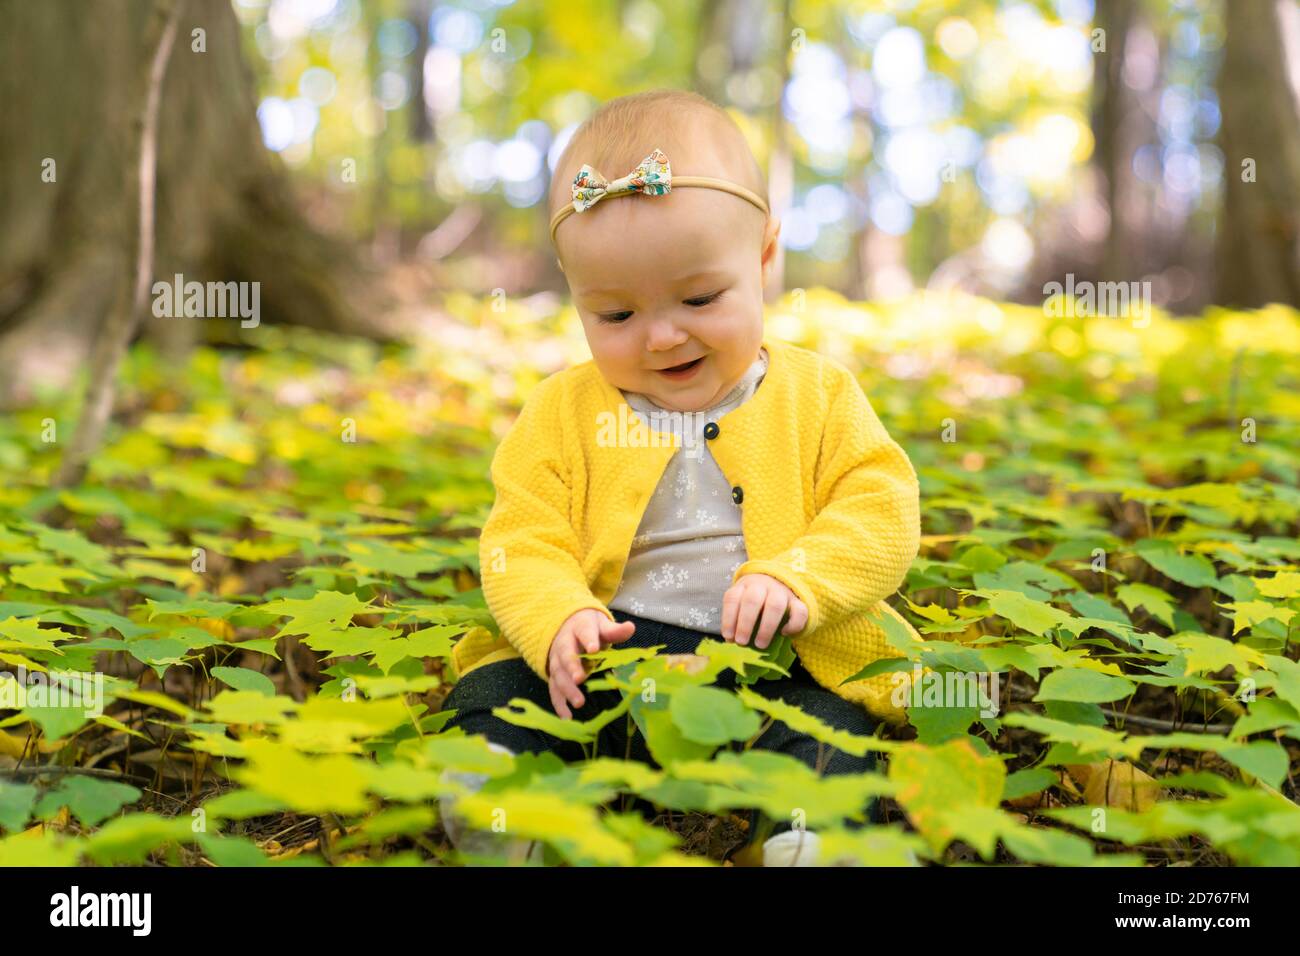 el bebé se sienta en el suelo en un bosque Foto de stock